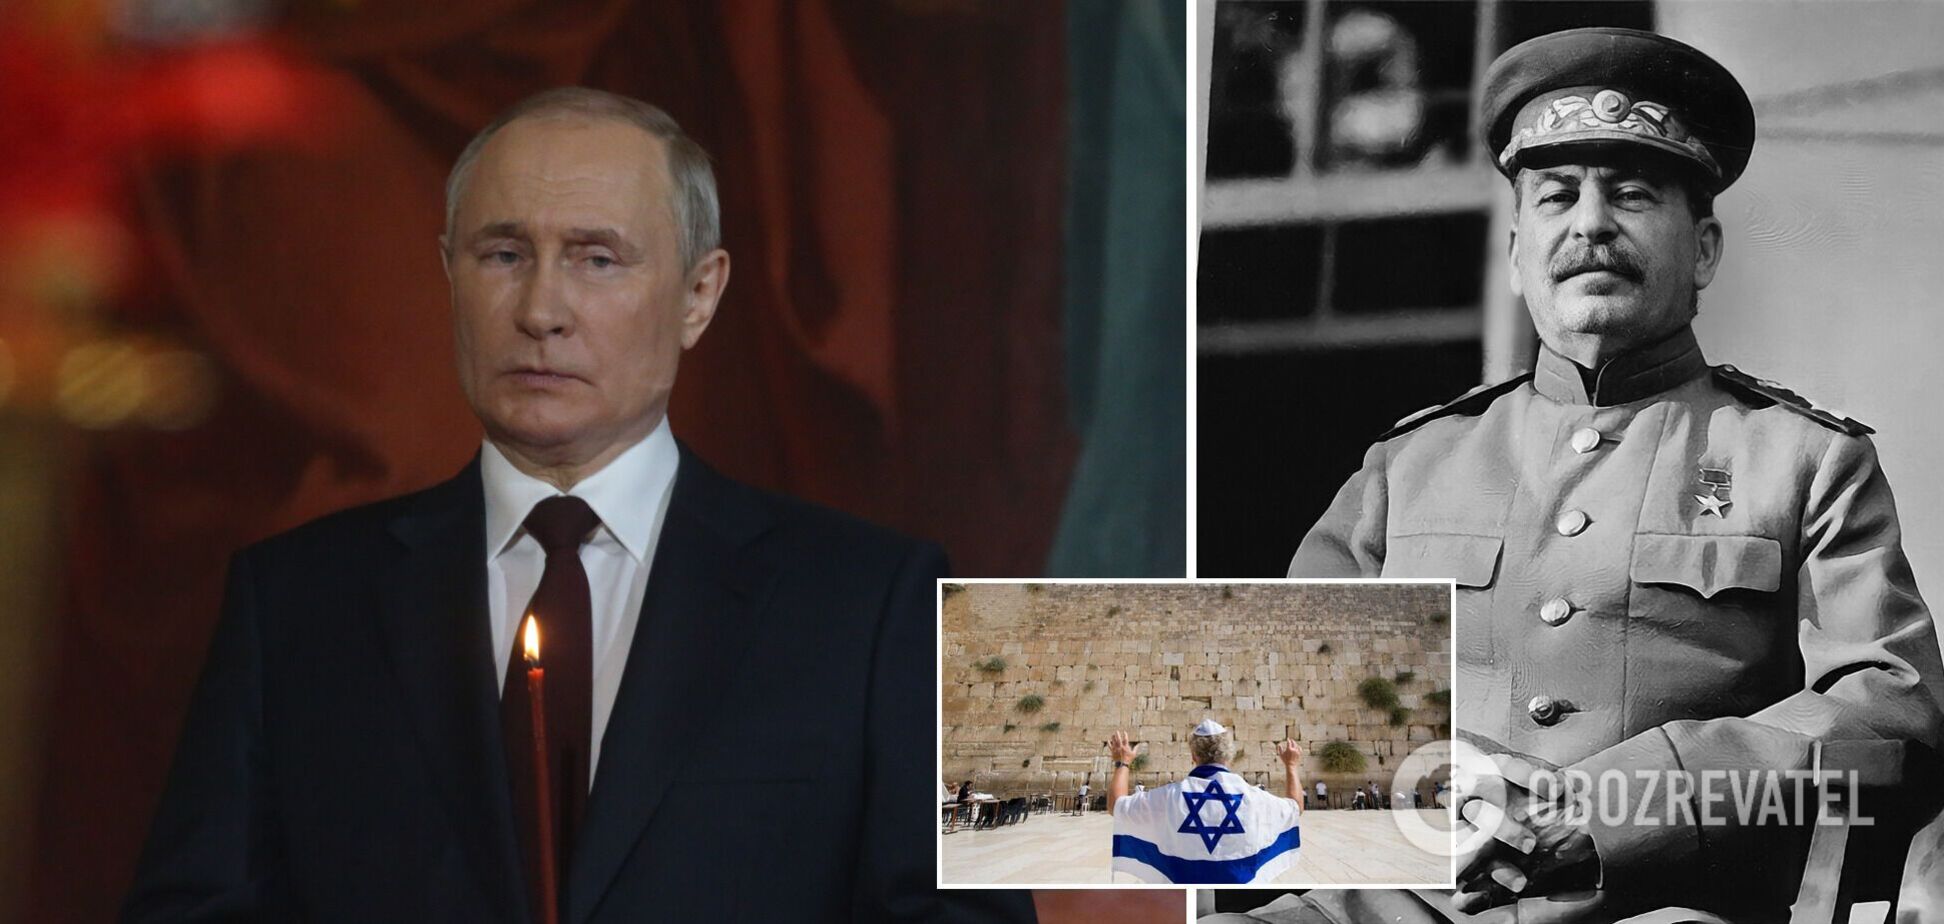 Путину приготовиться. Как работает страшное еврейское проклятие 'Пульса де-нура', которое могло убить премьеров Израиля, Троцкого и Сталина